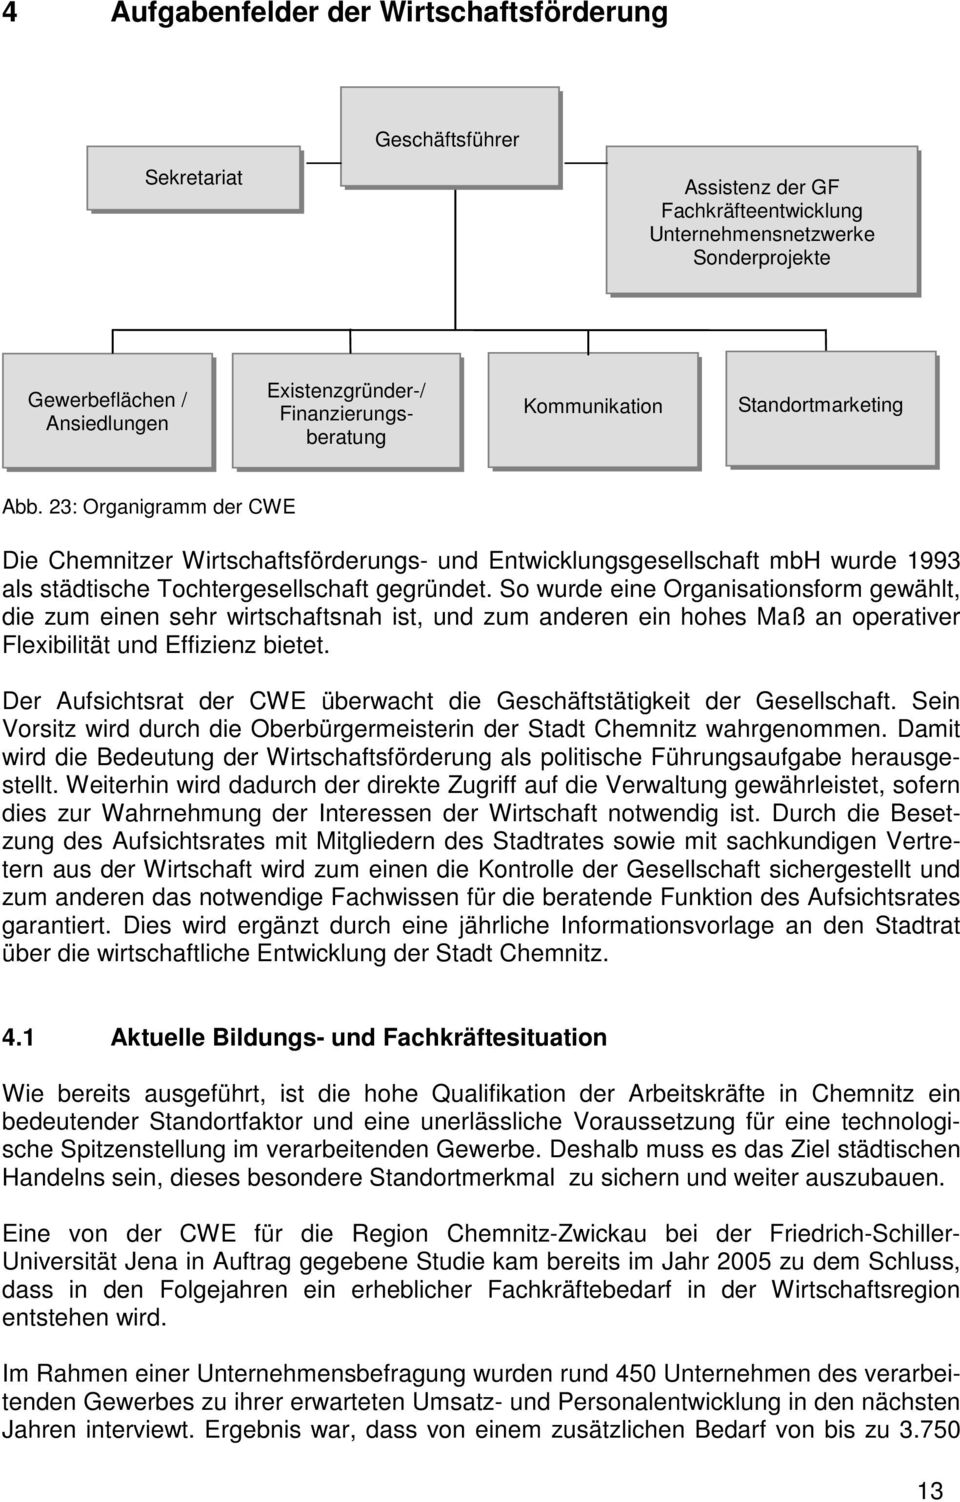 23: Organigramm der CWE Die Chemnitzer Wirtschaftsförderungs- und Entwicklungsgesellschaft mbh wurde 1993 als städtische Tochtergesellschaft gegründet.